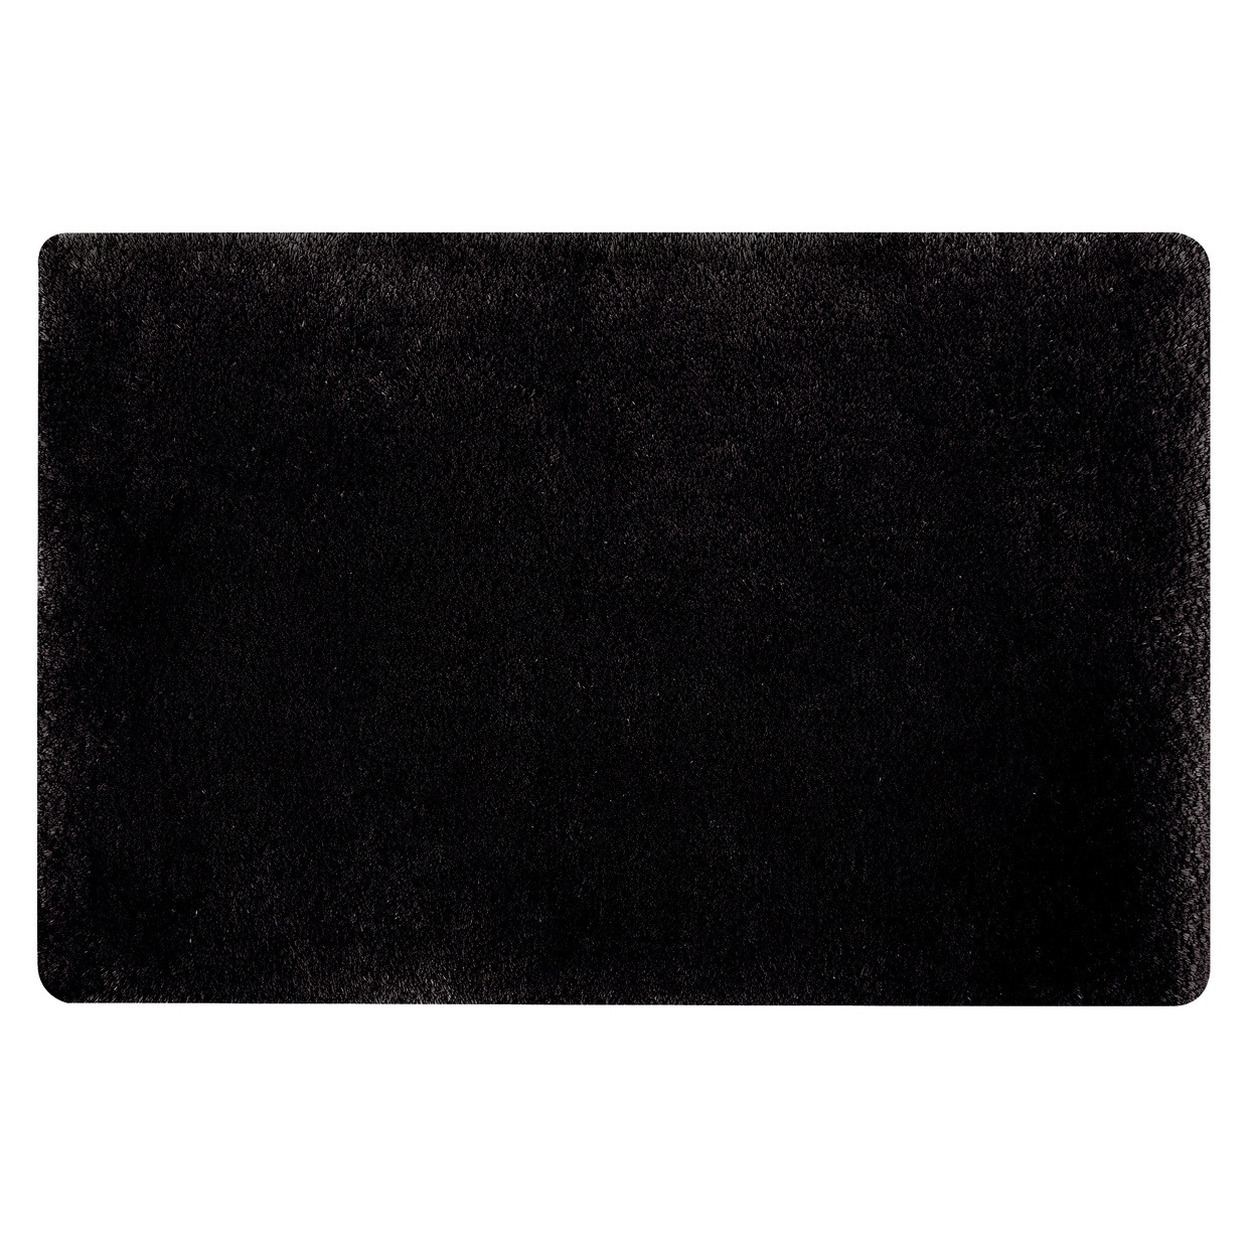 Spirella badkamer vloer kleedje-badmat tapijt hoogpolig en luxe uitvoering zwart 50 x 80